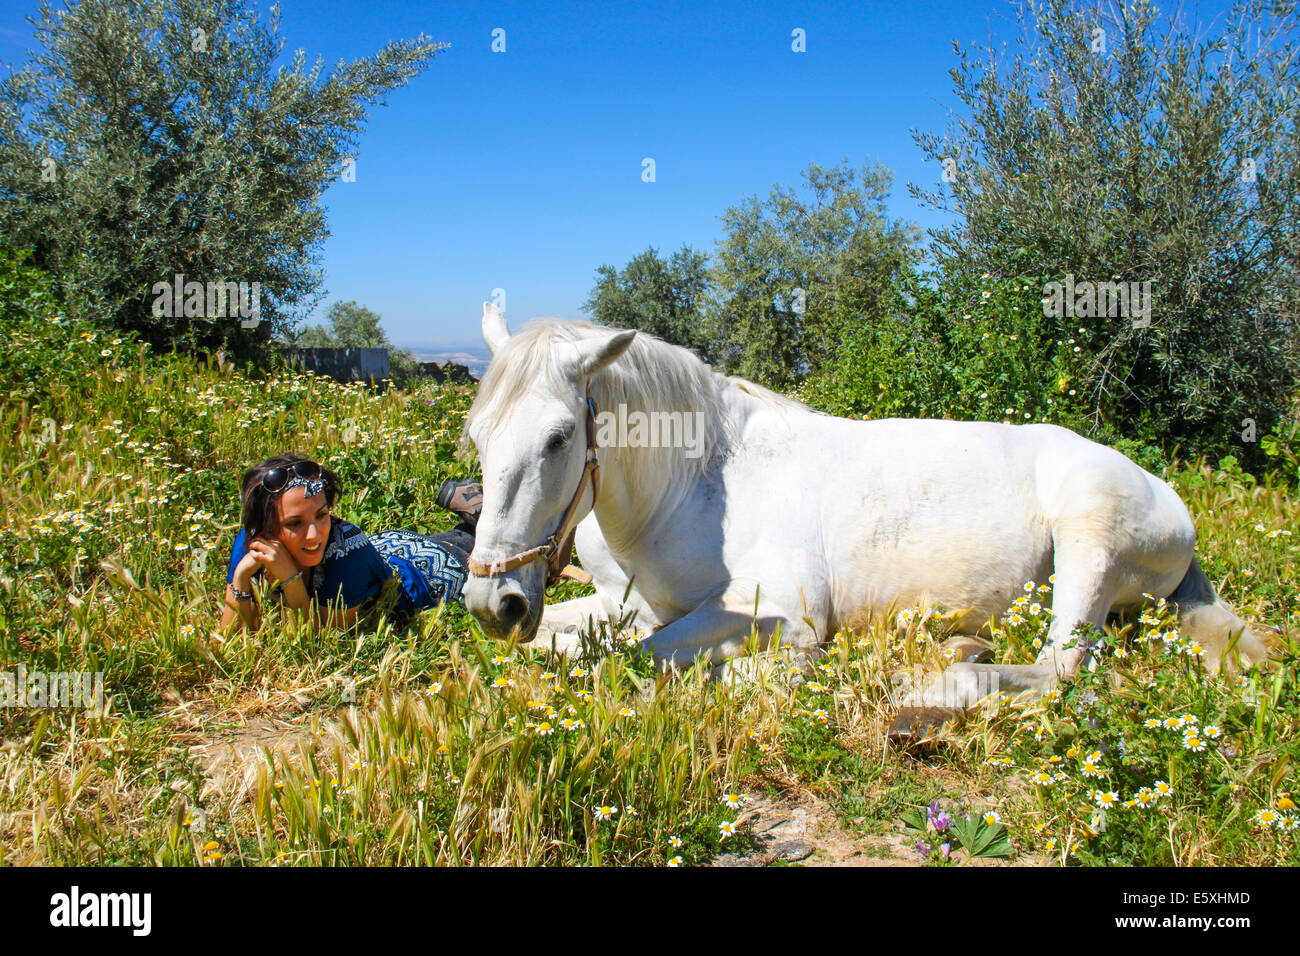 Hermoso caballo blanco con un joven a su lado entre las flores del campo Foto de stock